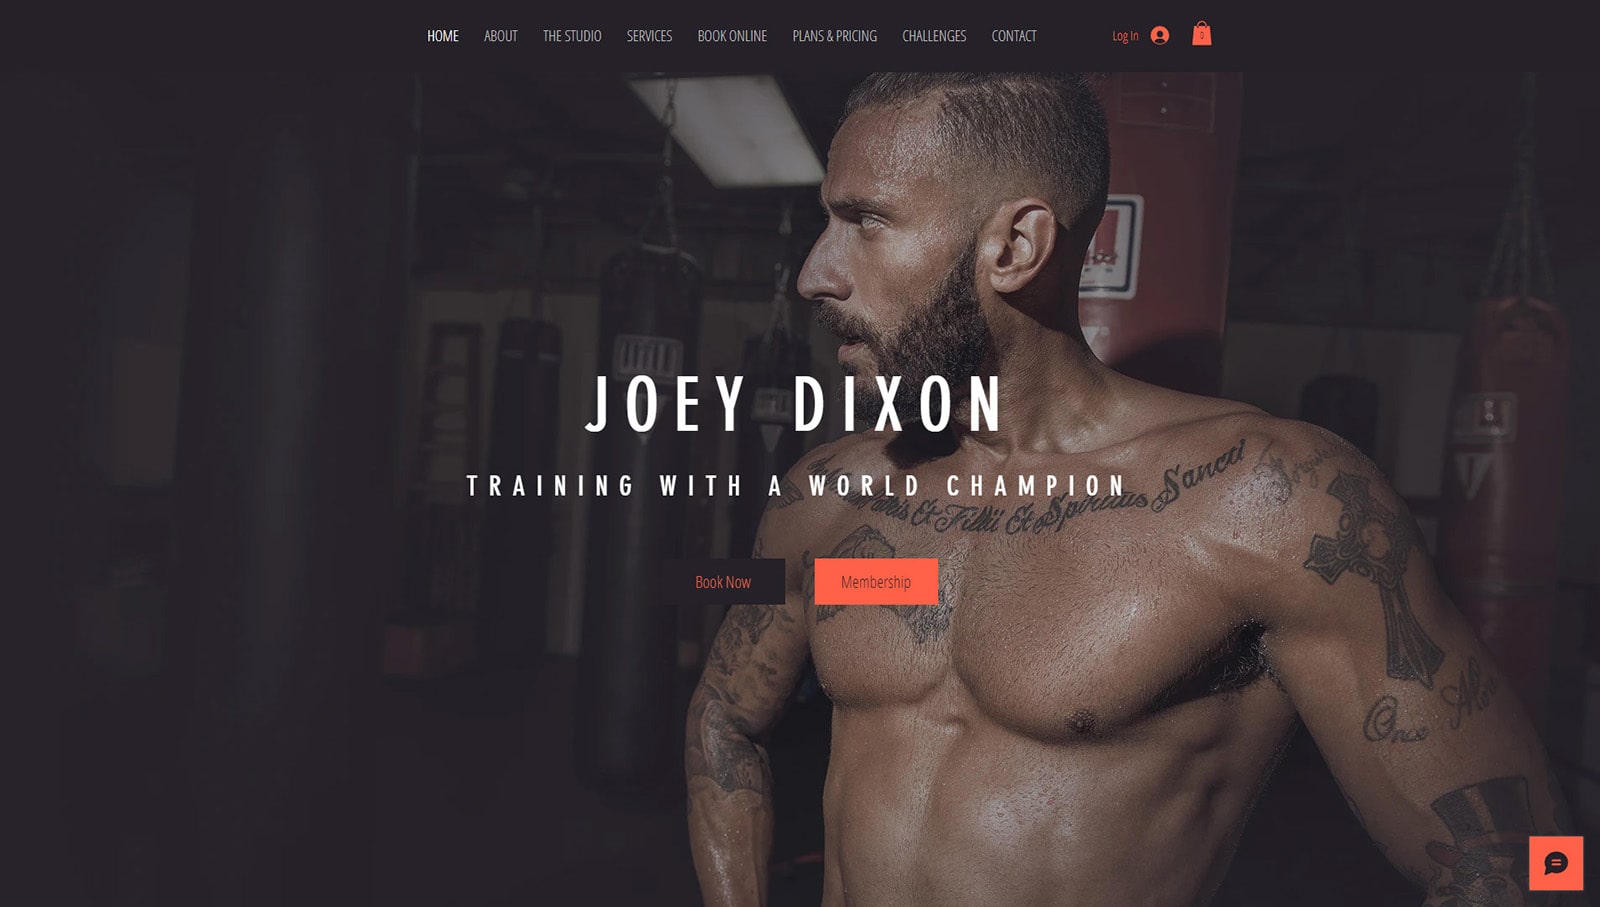 Visual von Joey Dixon, einer Vorlage von Wix, die ein responsives Website-Design für Fitnessstudios bietet.